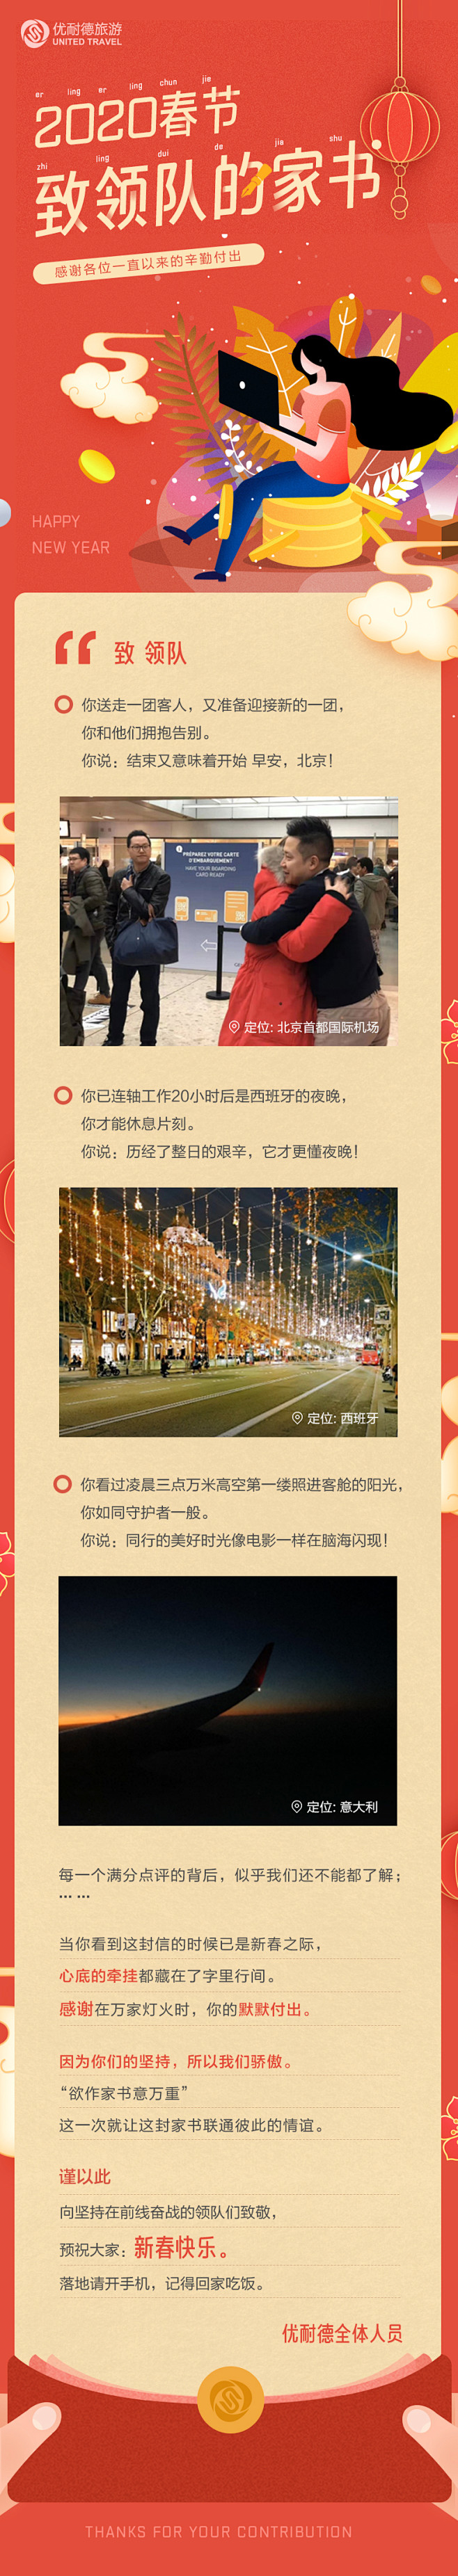 春节微信旅游长图-感谢信-旅游专题页